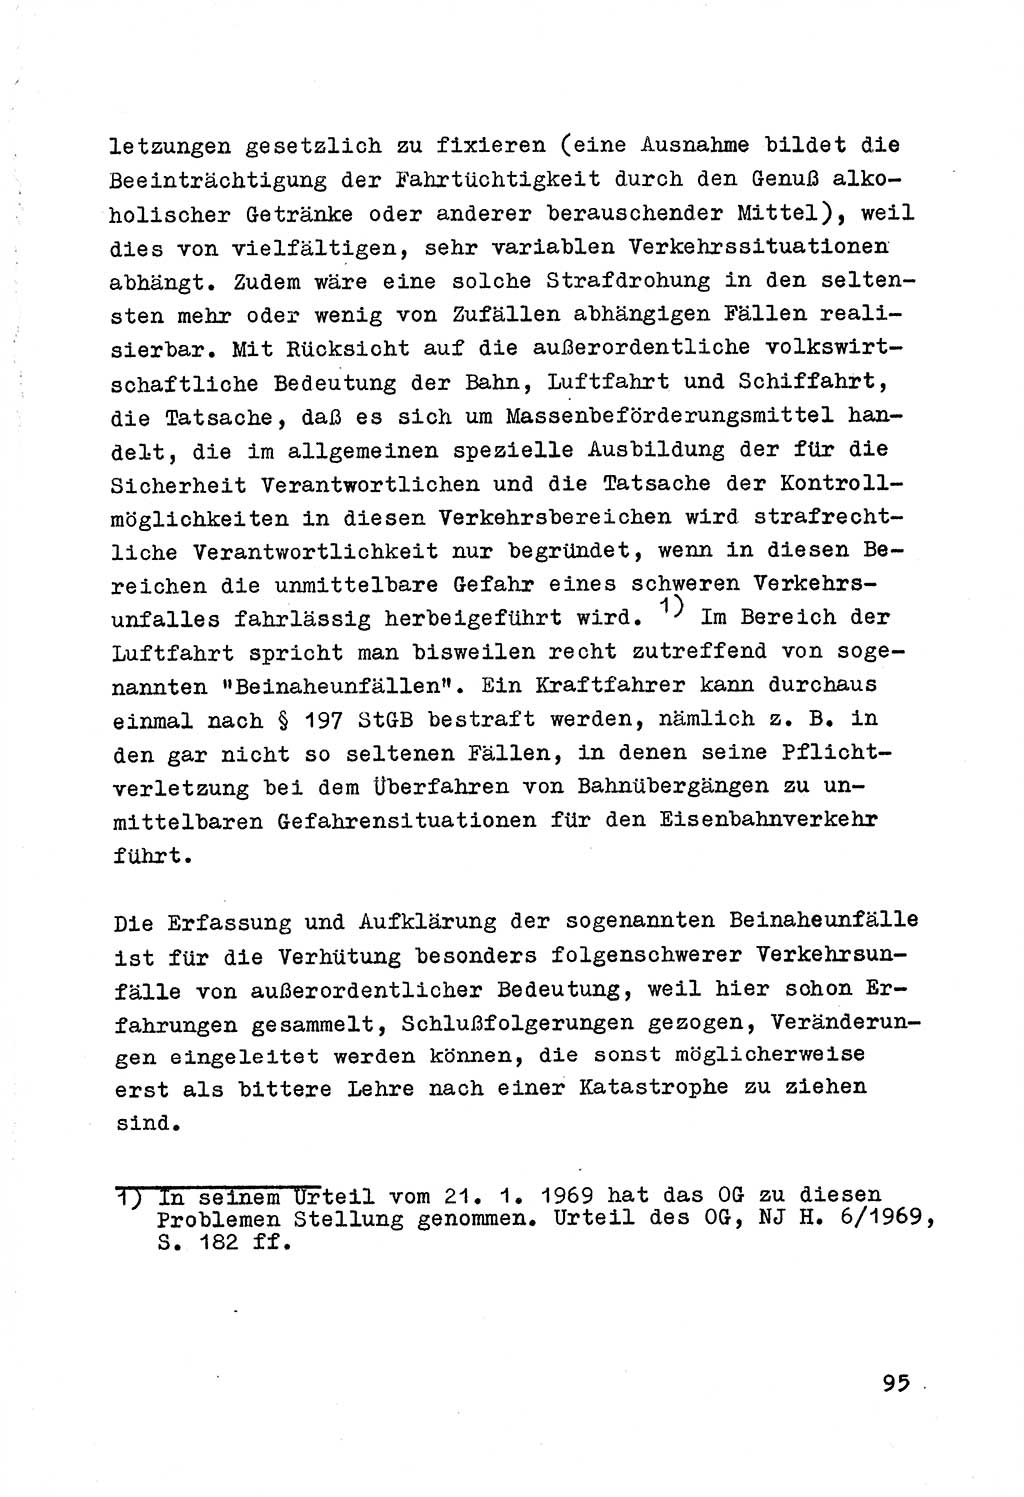 Strafrecht der DDR (Deutsche Demokratische Republik), Besonderer Teil, Lehrmaterial, Heft 7 1970, Seite 95 (Strafr. DDR BT Lehrmat. H. 7 1970, S. 95)